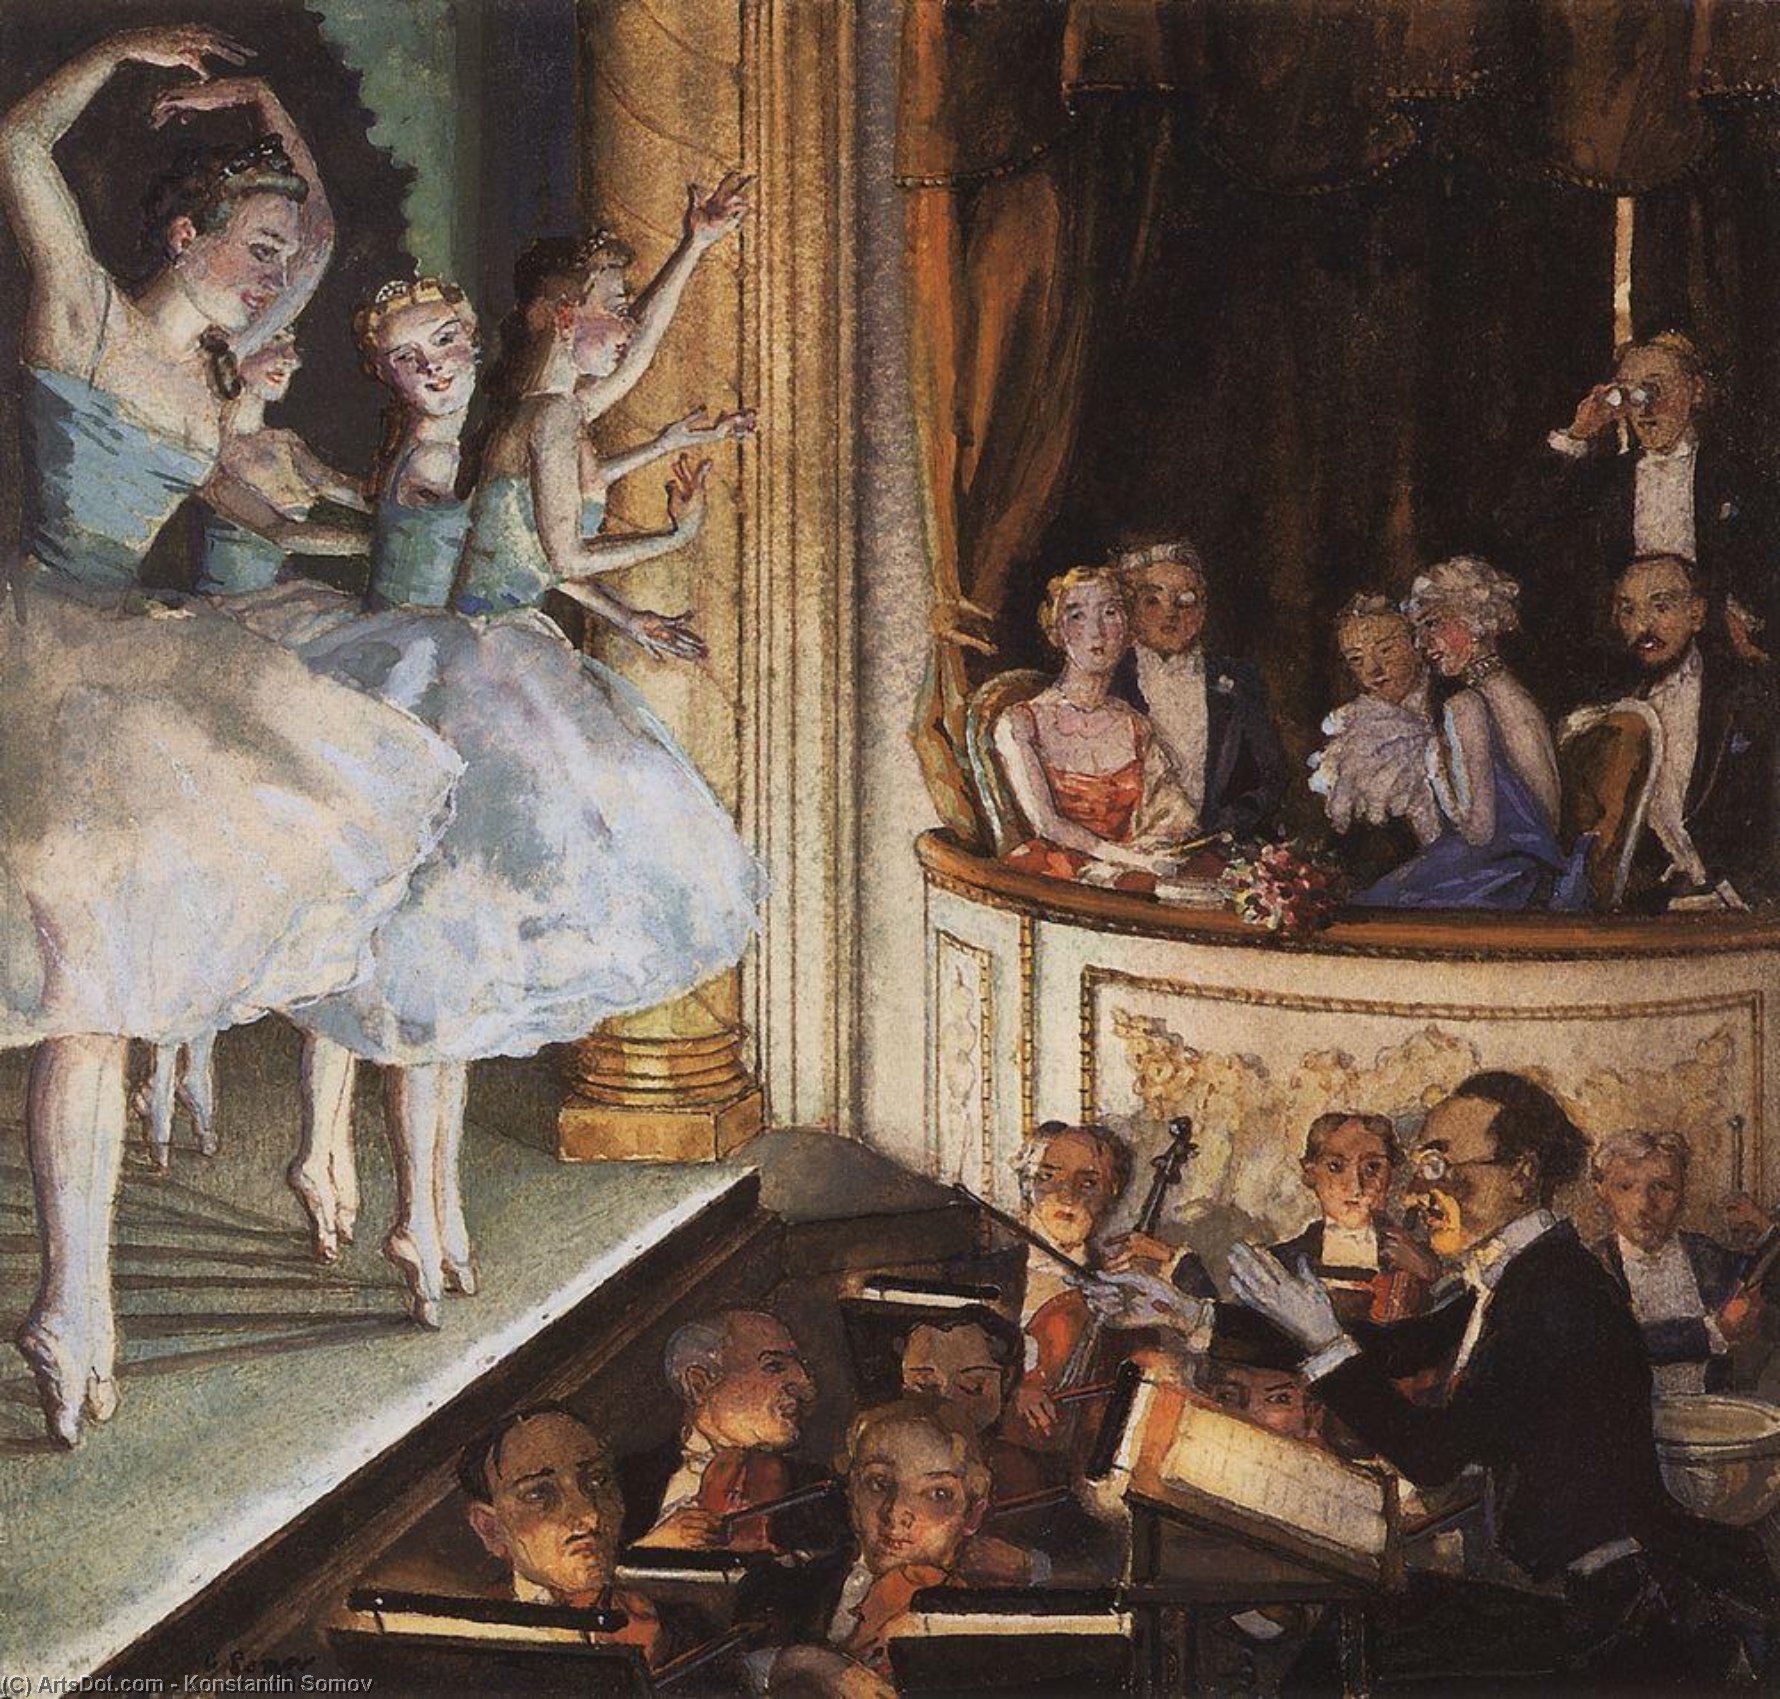 WikiOO.org - Encyclopedia of Fine Arts - Malba, Artwork Konstantin Somov - Russian ballet